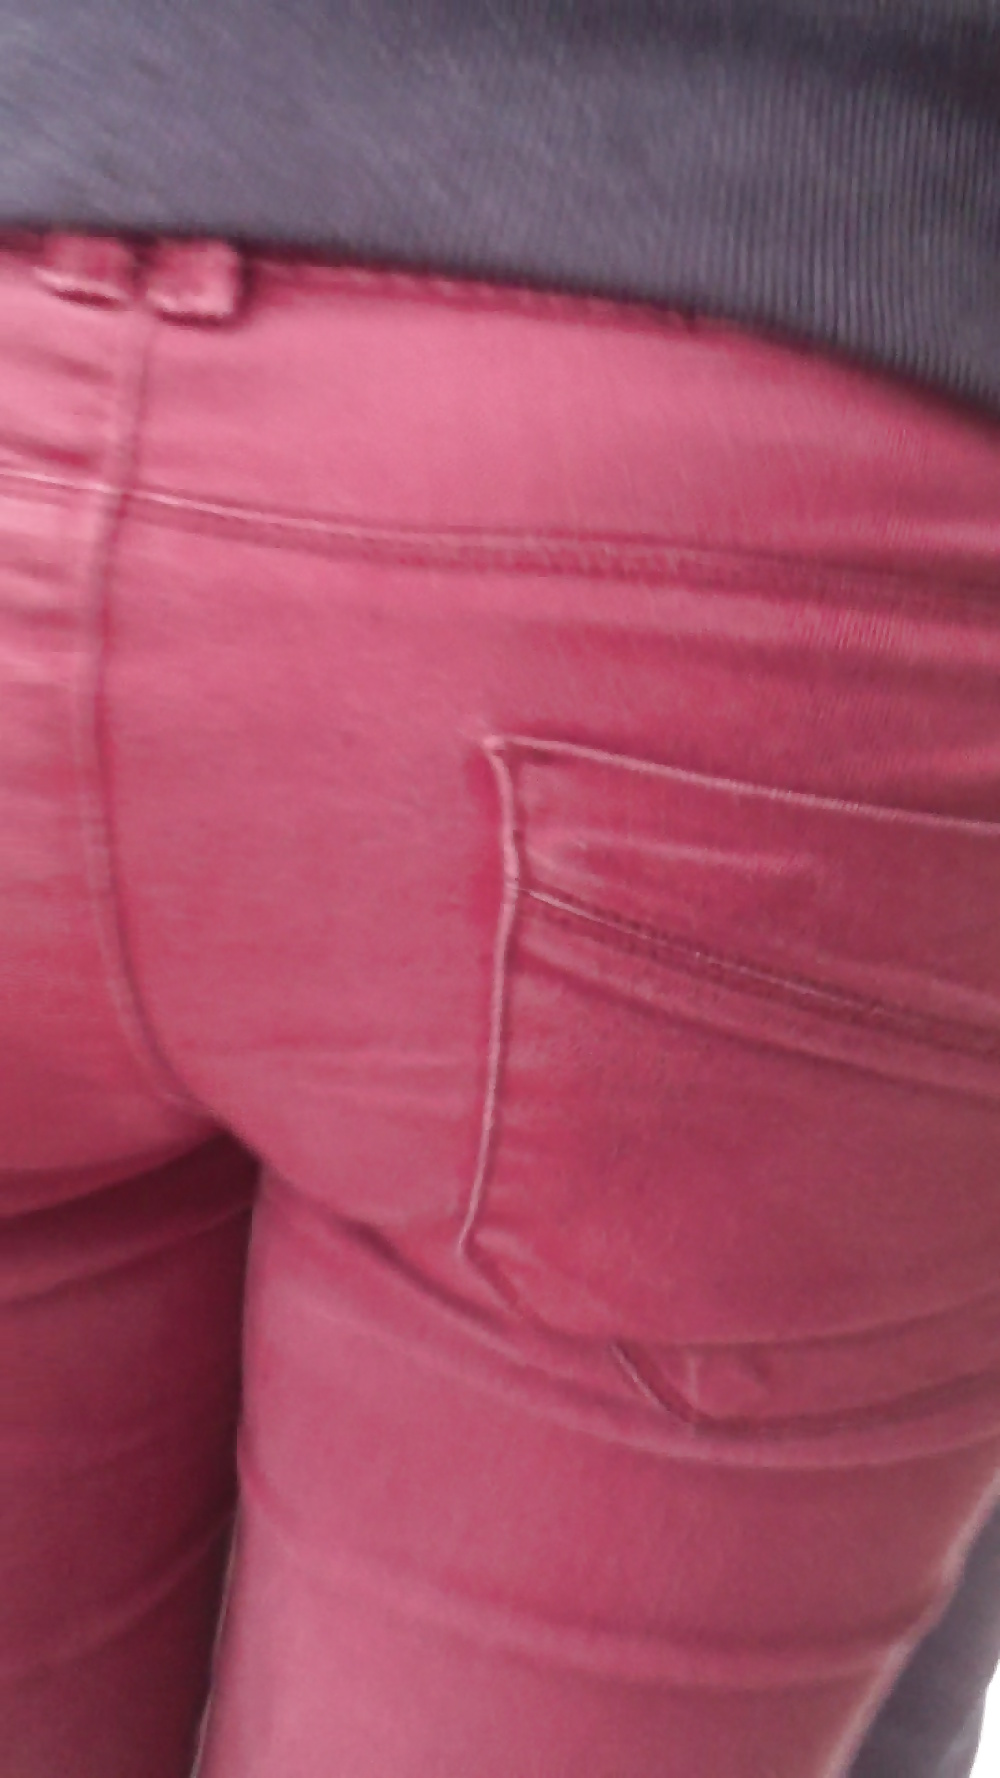 Popular teen girls ass & butt in jeans Part 6 #32010285